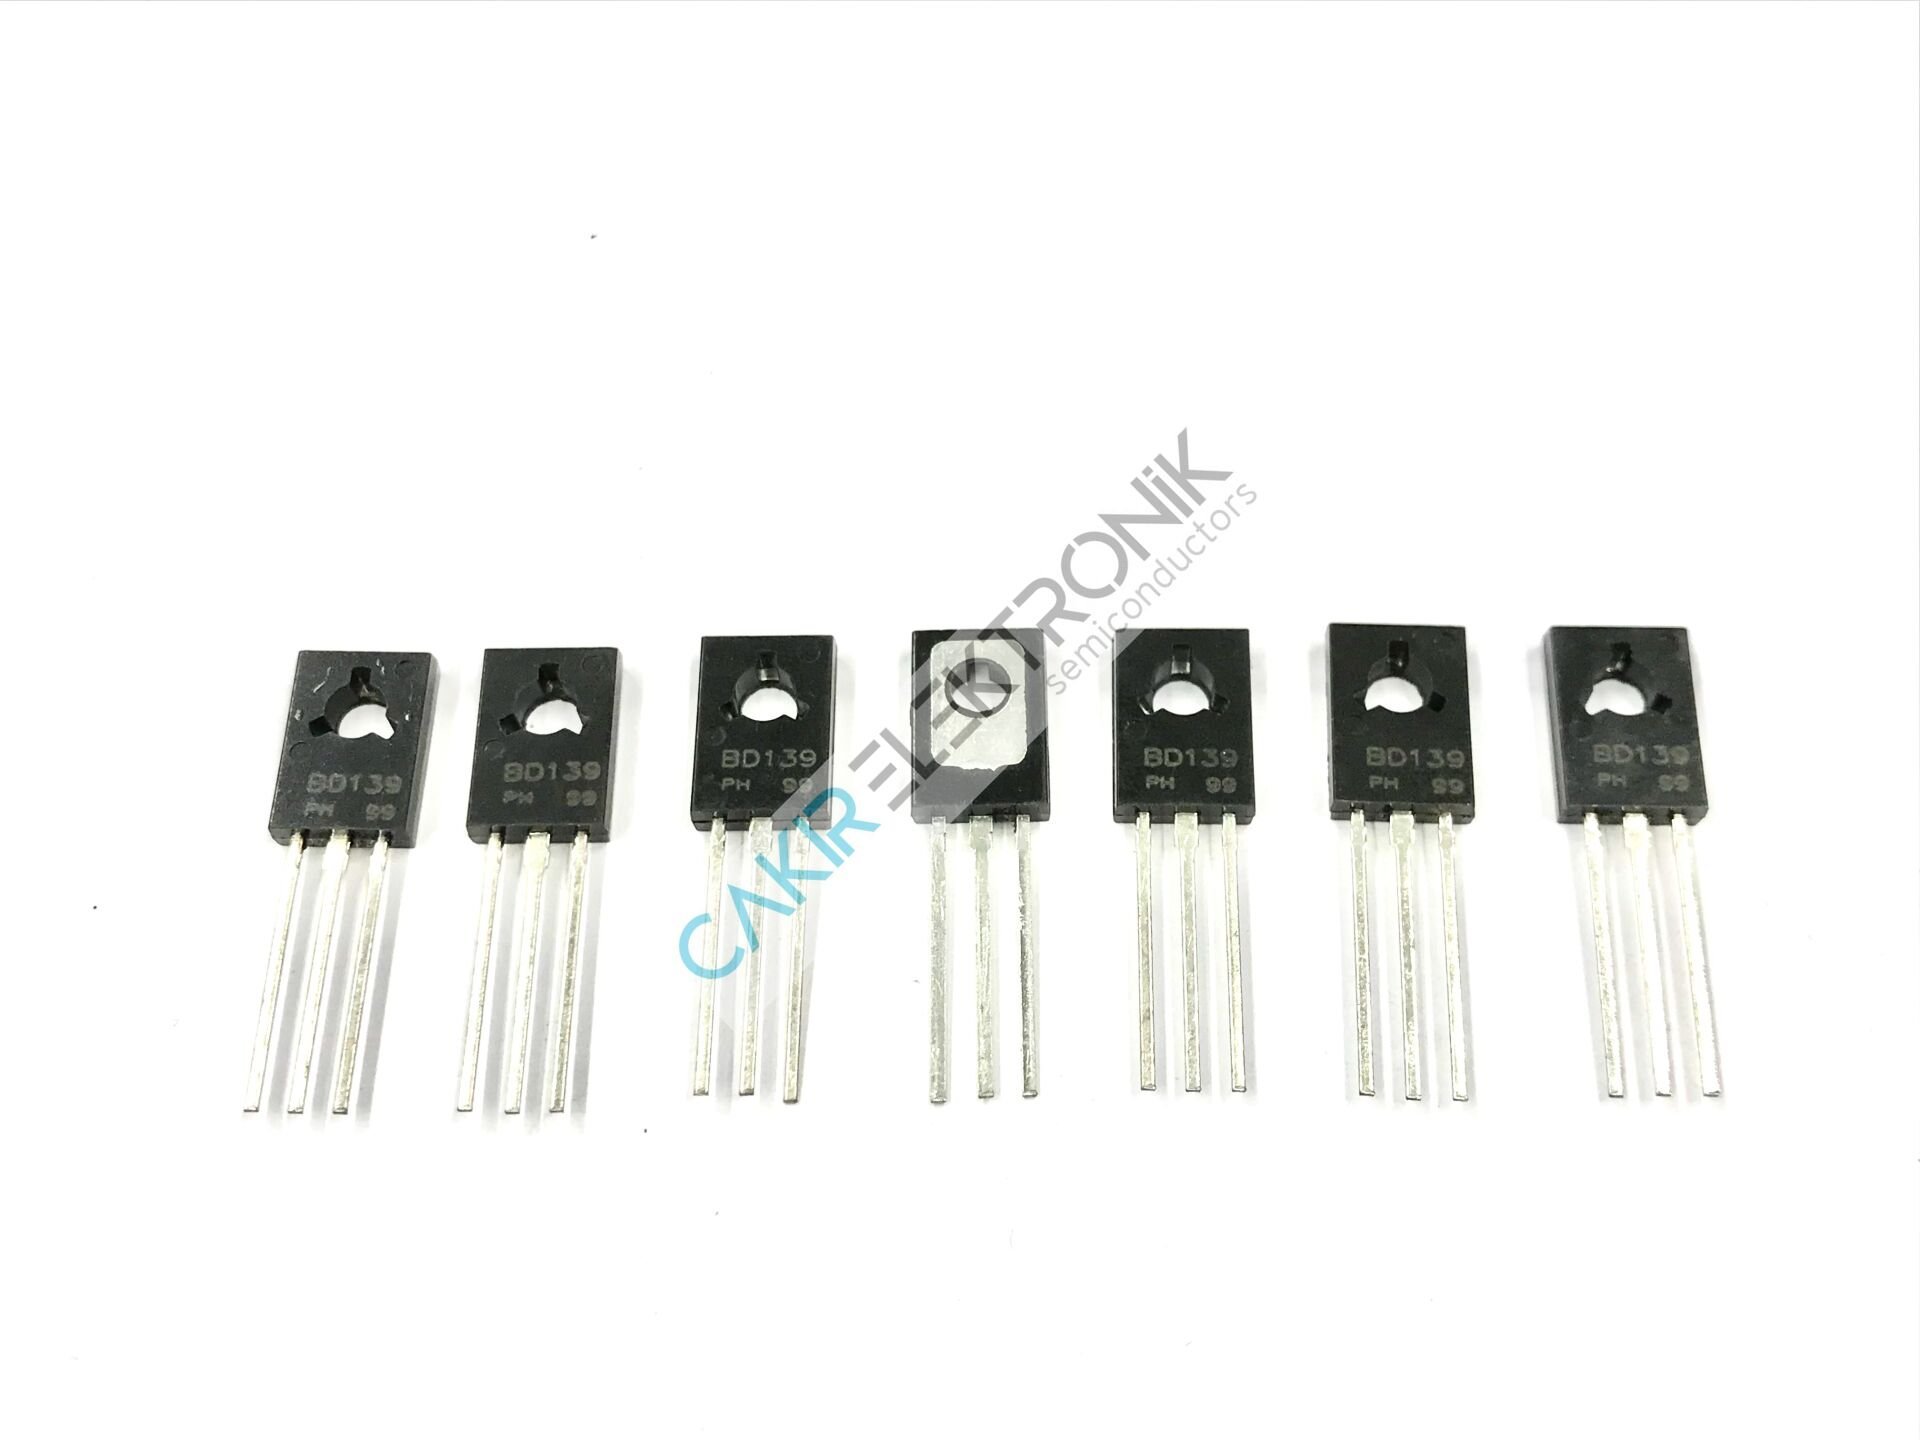 BD139 - Medium Power NPN Transistor 80V. 1,5 A.